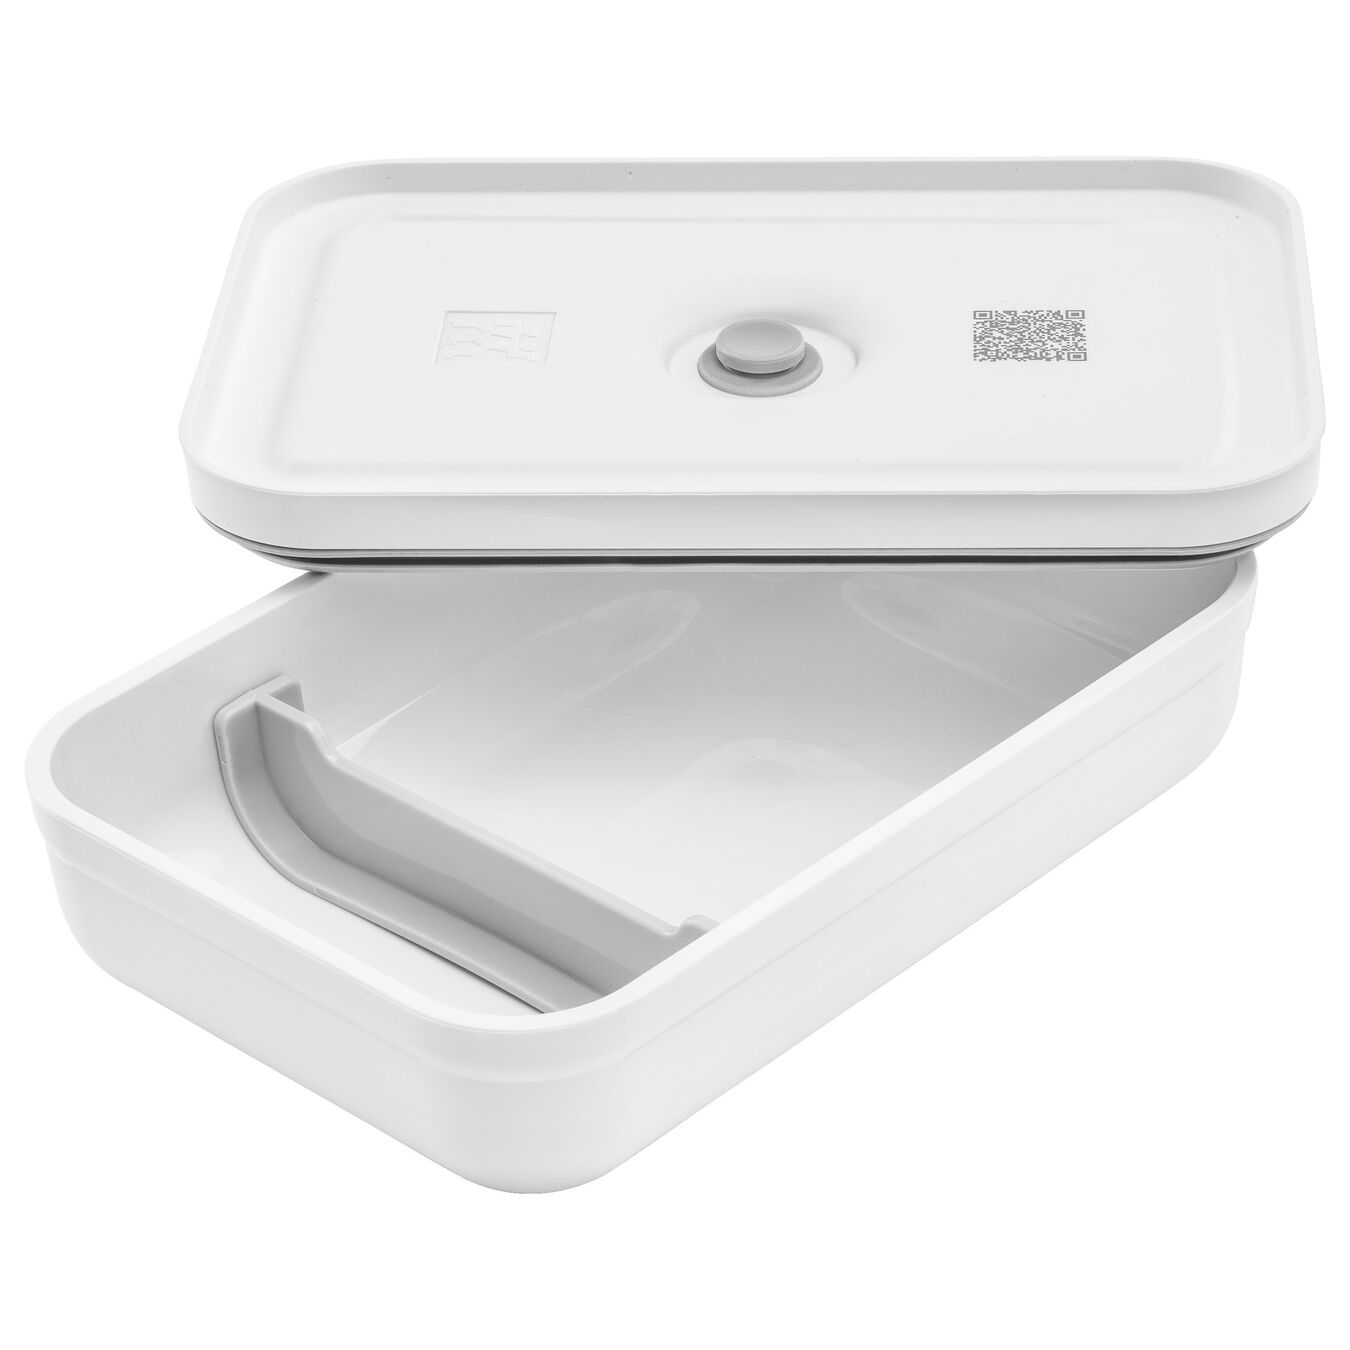 Lunch box sous-vide L plate, Plastique, Blanc-Gris,,large 5